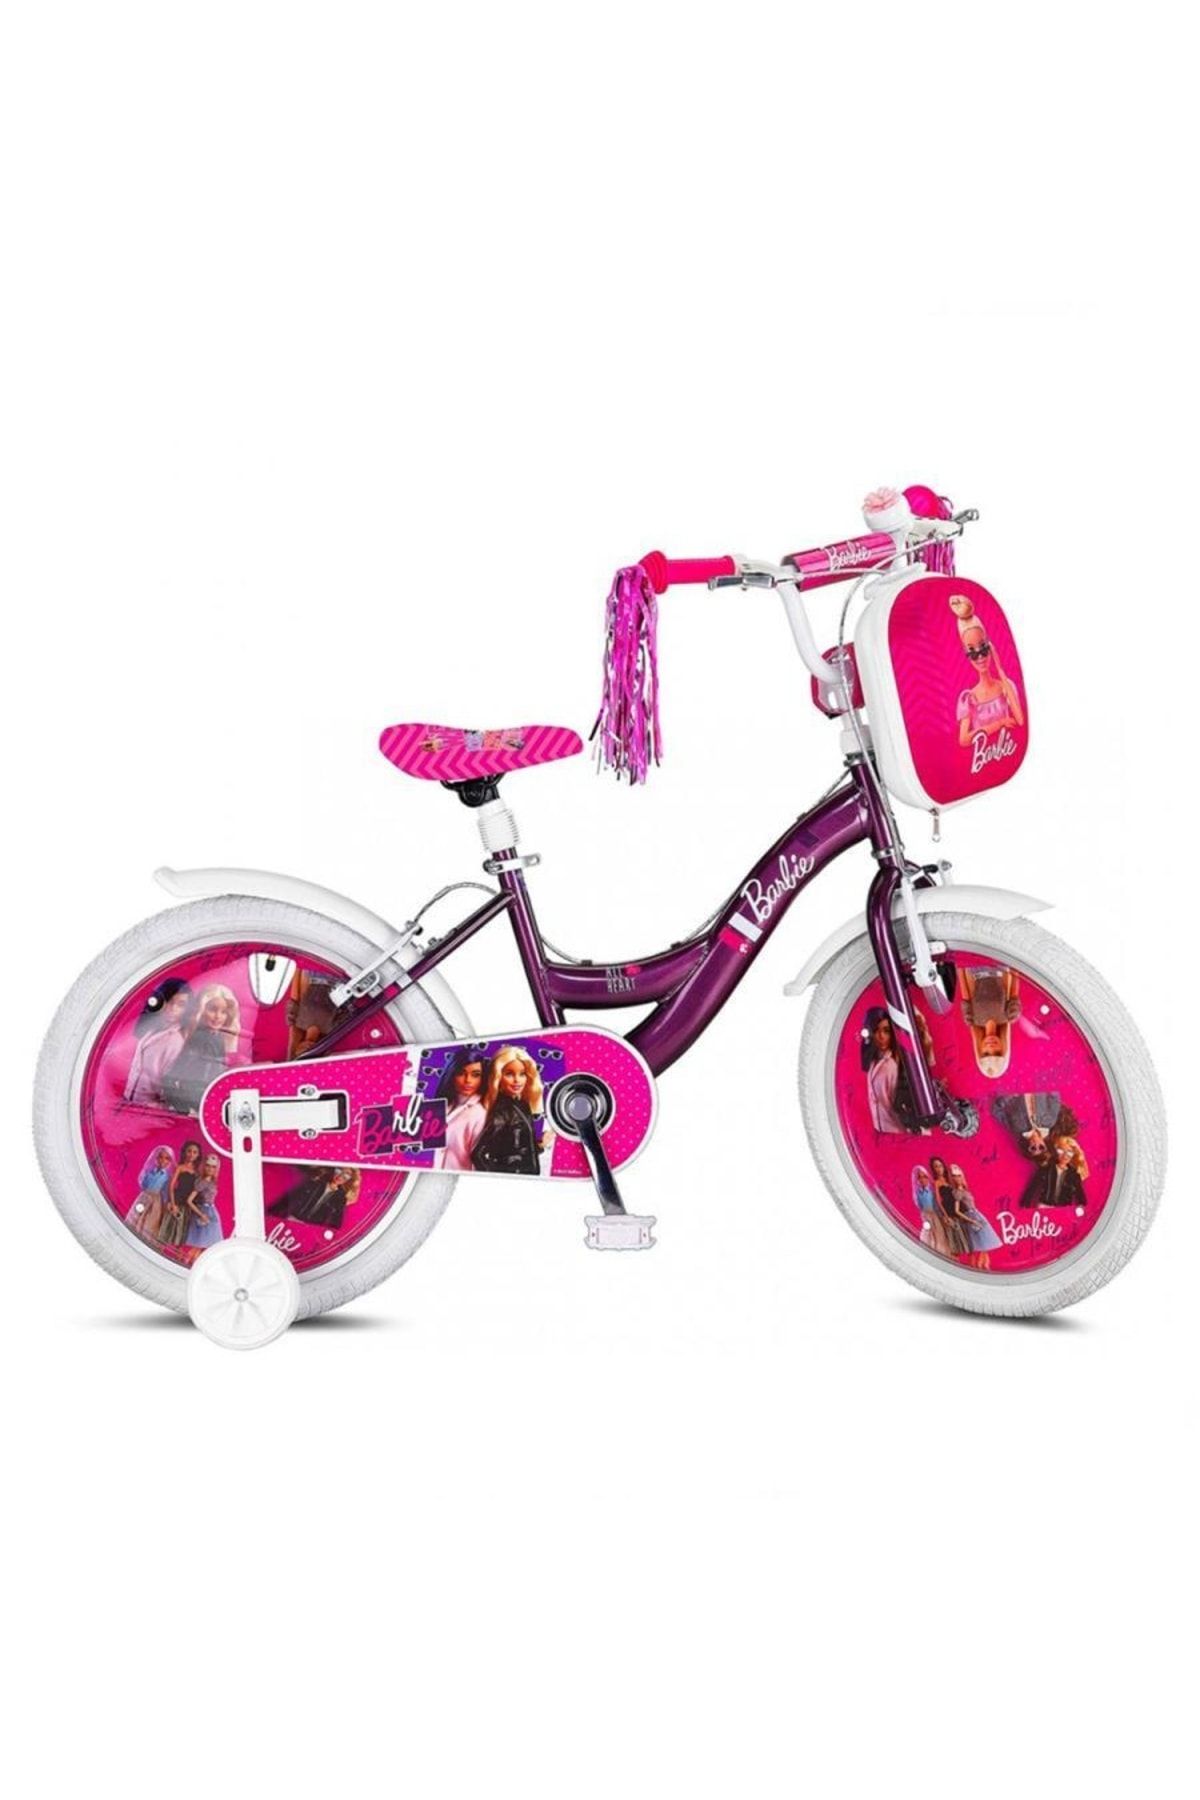 Genel Markalar 2043 Barbie 20 Jant Bisiklet